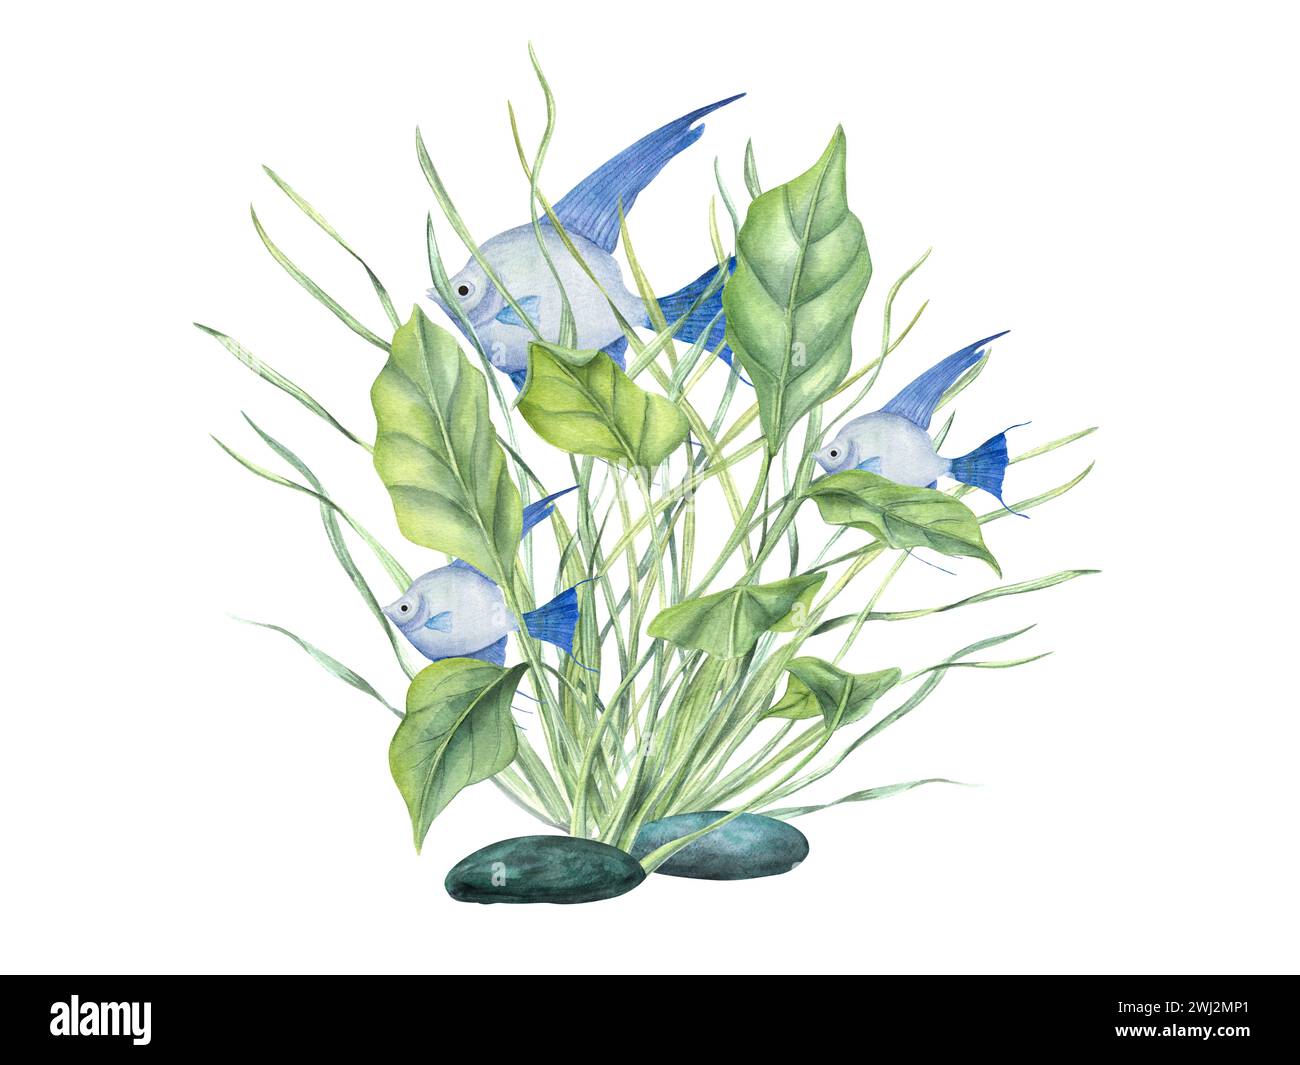 Pesce angelo azzurro tra le alghe verdi. Pesci tropicali, piante marine. Scalare, alghe. erba dell'oceano. Alghe, foglie verdi. Illustrazione acquerello. Design Foto Stock